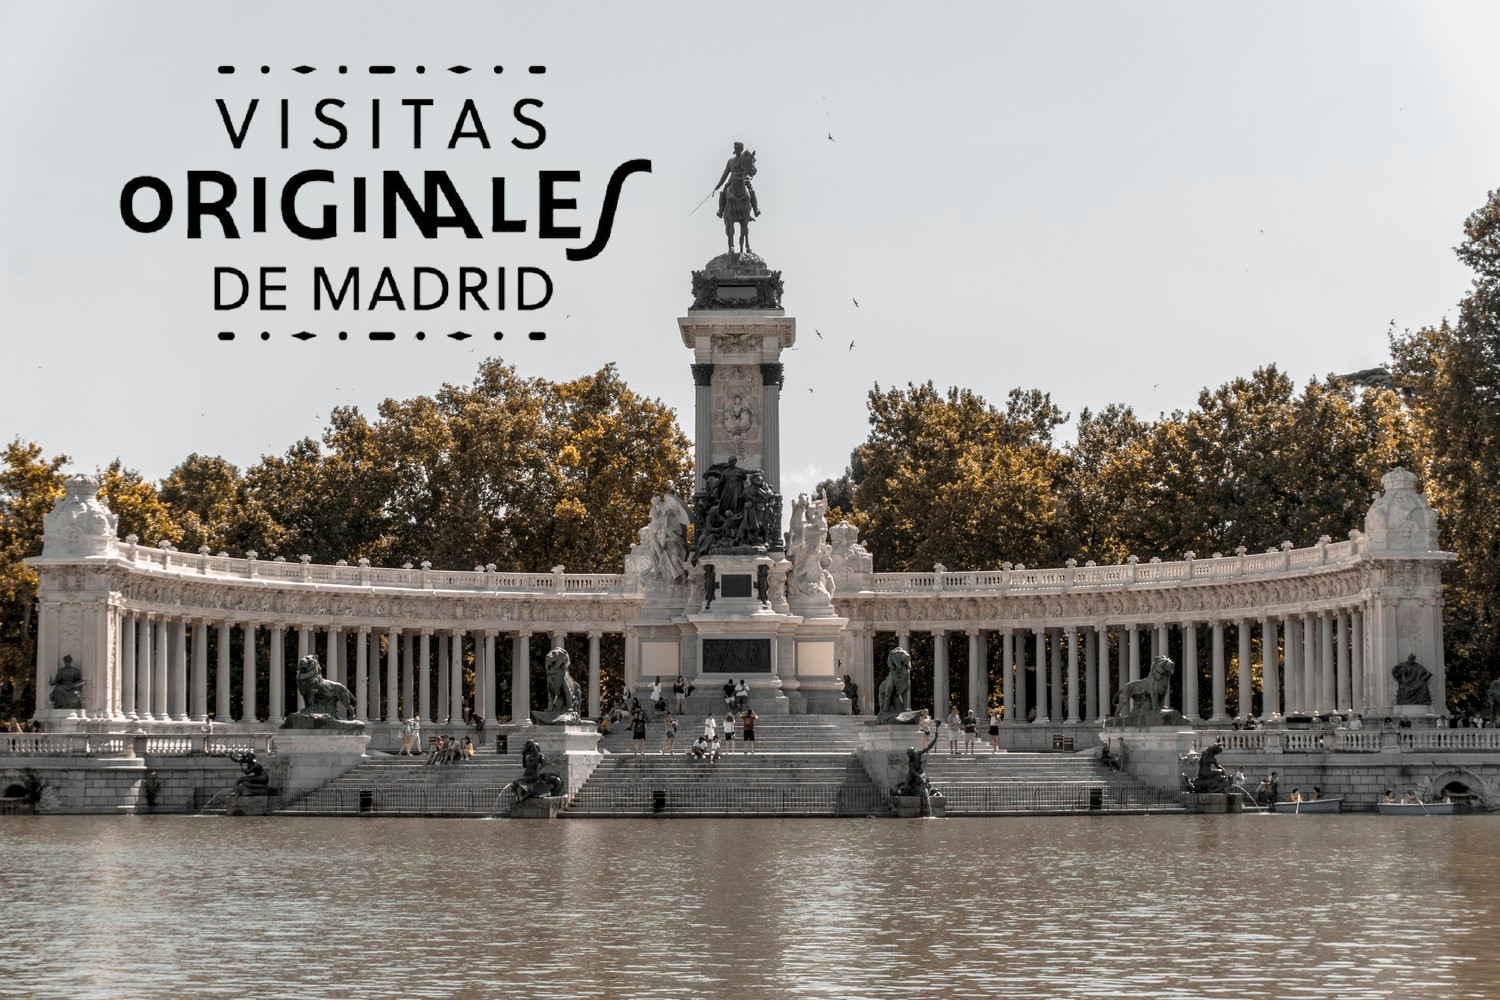 logo de Visitas Originales de Madrid, parque de Madrid